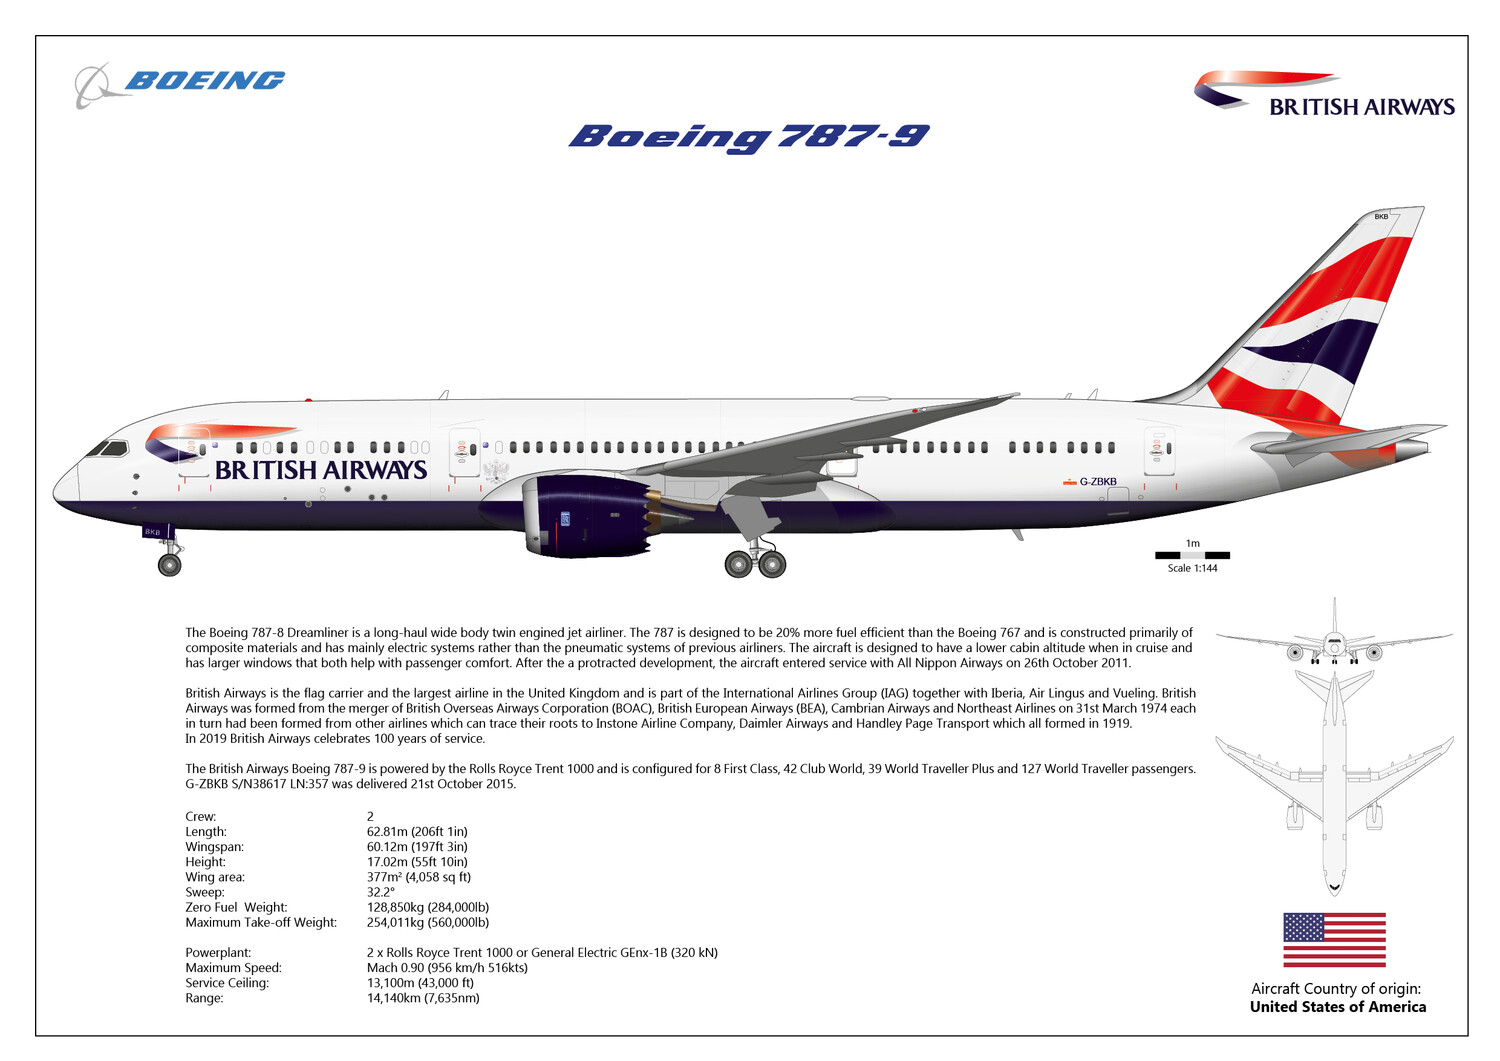 Boeing 787-9 Dreamliner of British Airways